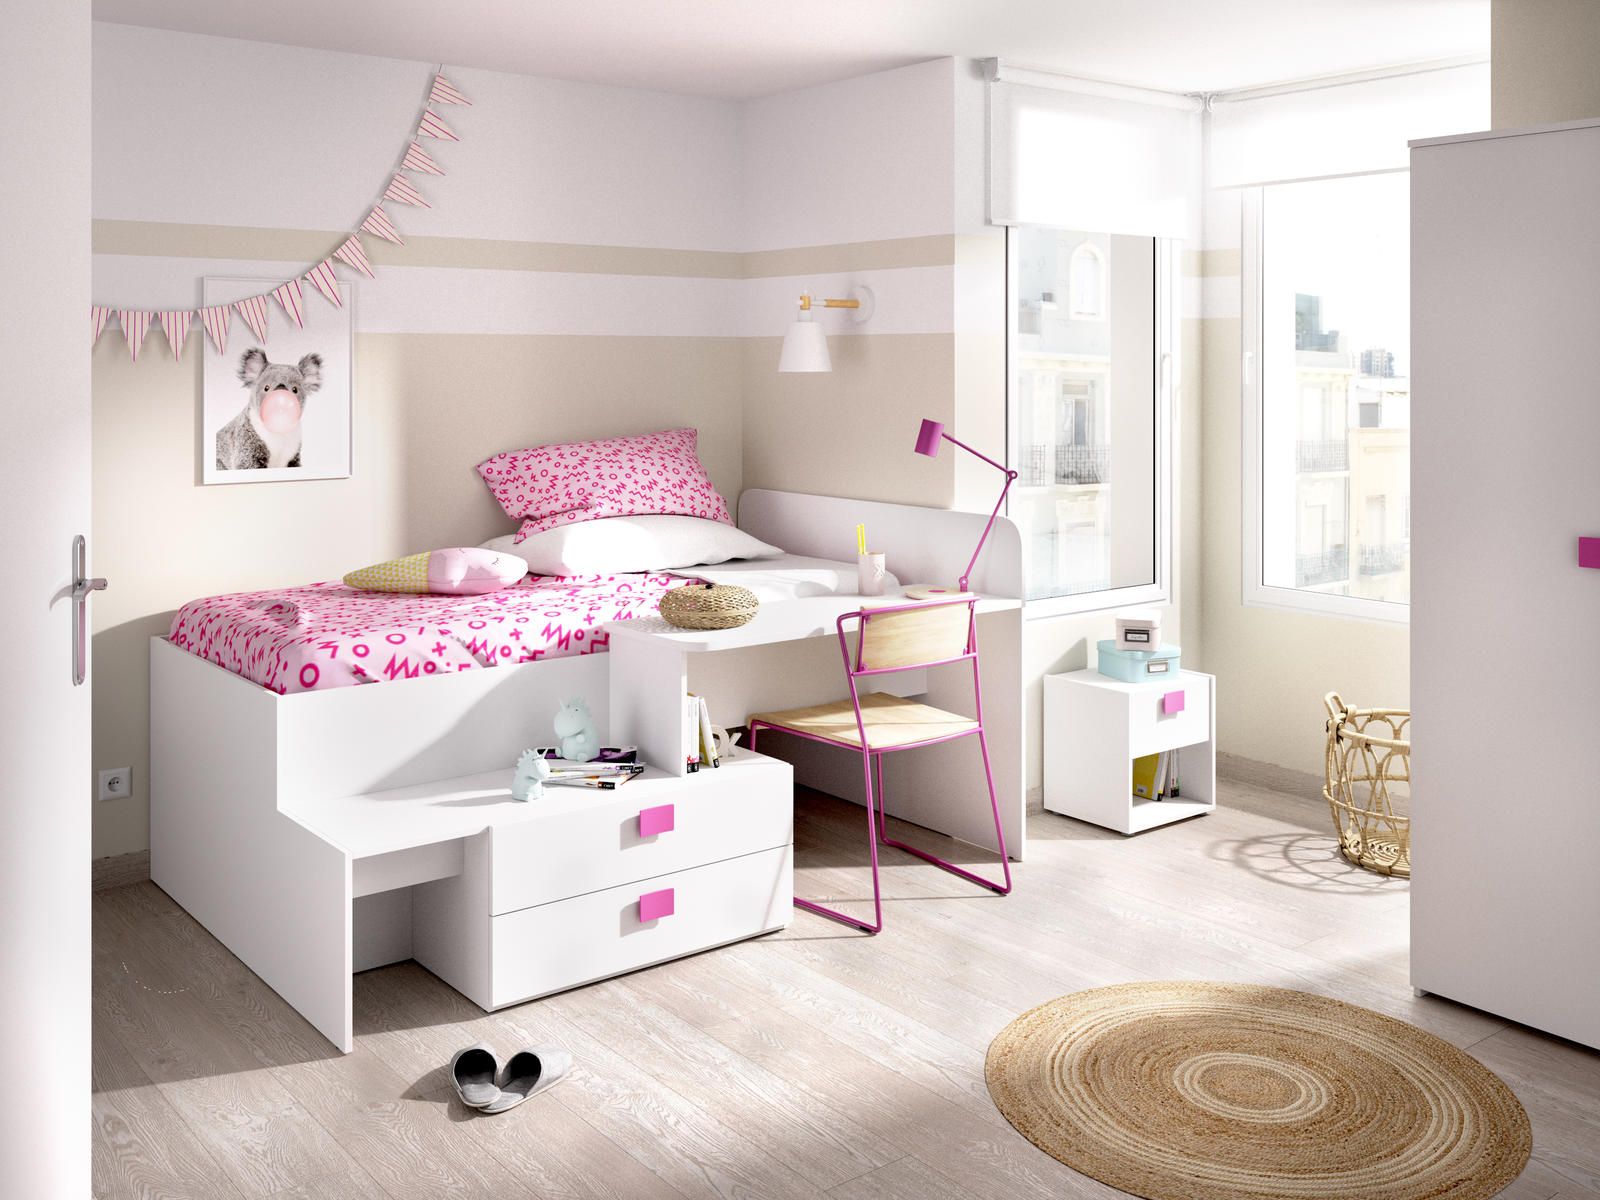 Aldo Kompaktní dětská postel Chic, white-pink - Nábytek ALDO